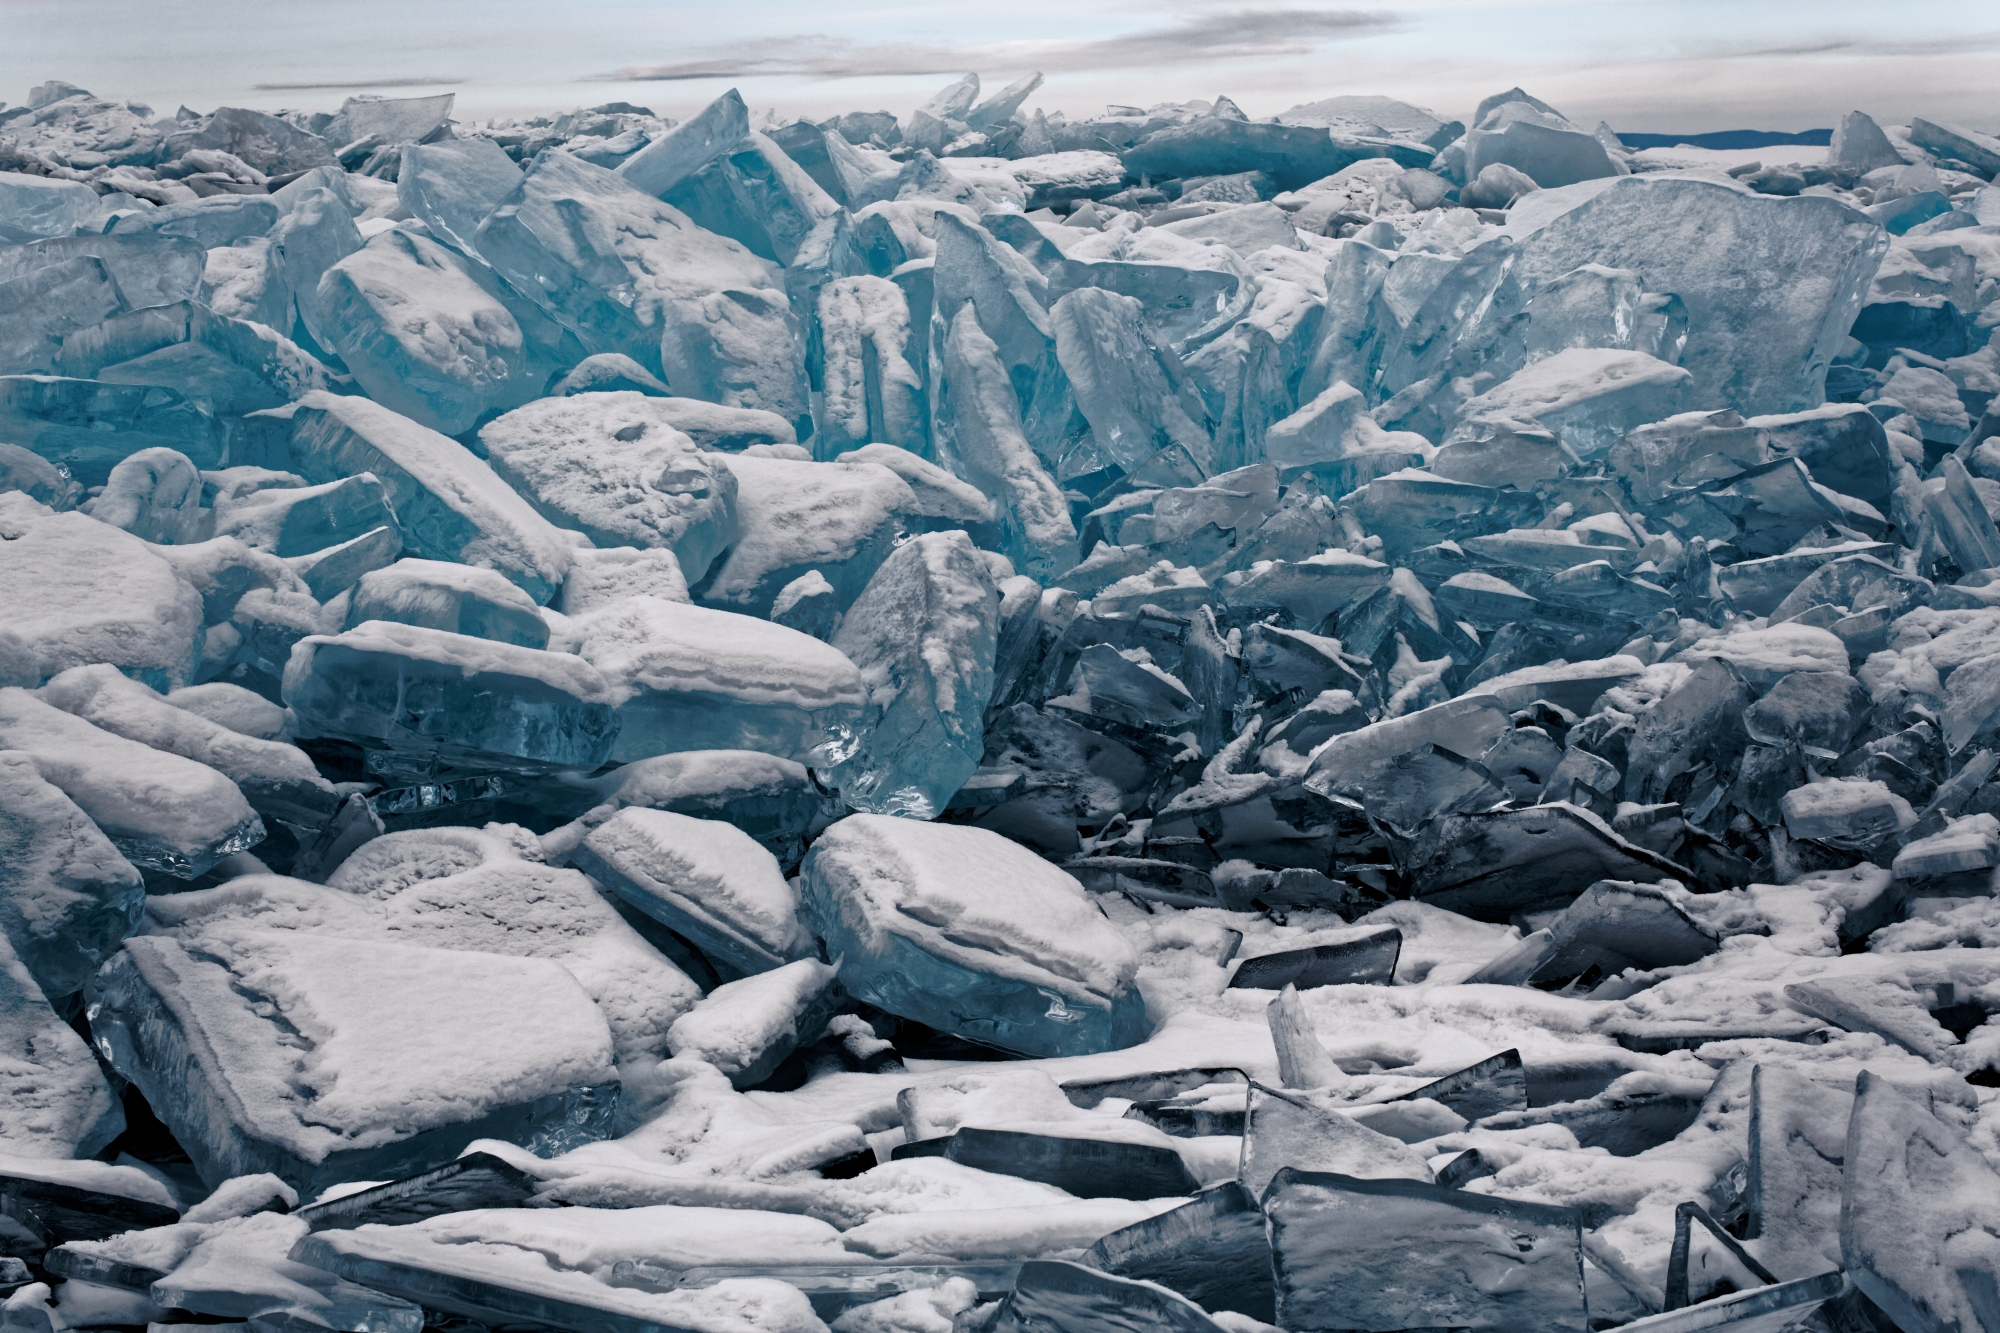 L’une des images impressionnantes ramenées du lac sibérien gelé. Une vision presque irréelle.